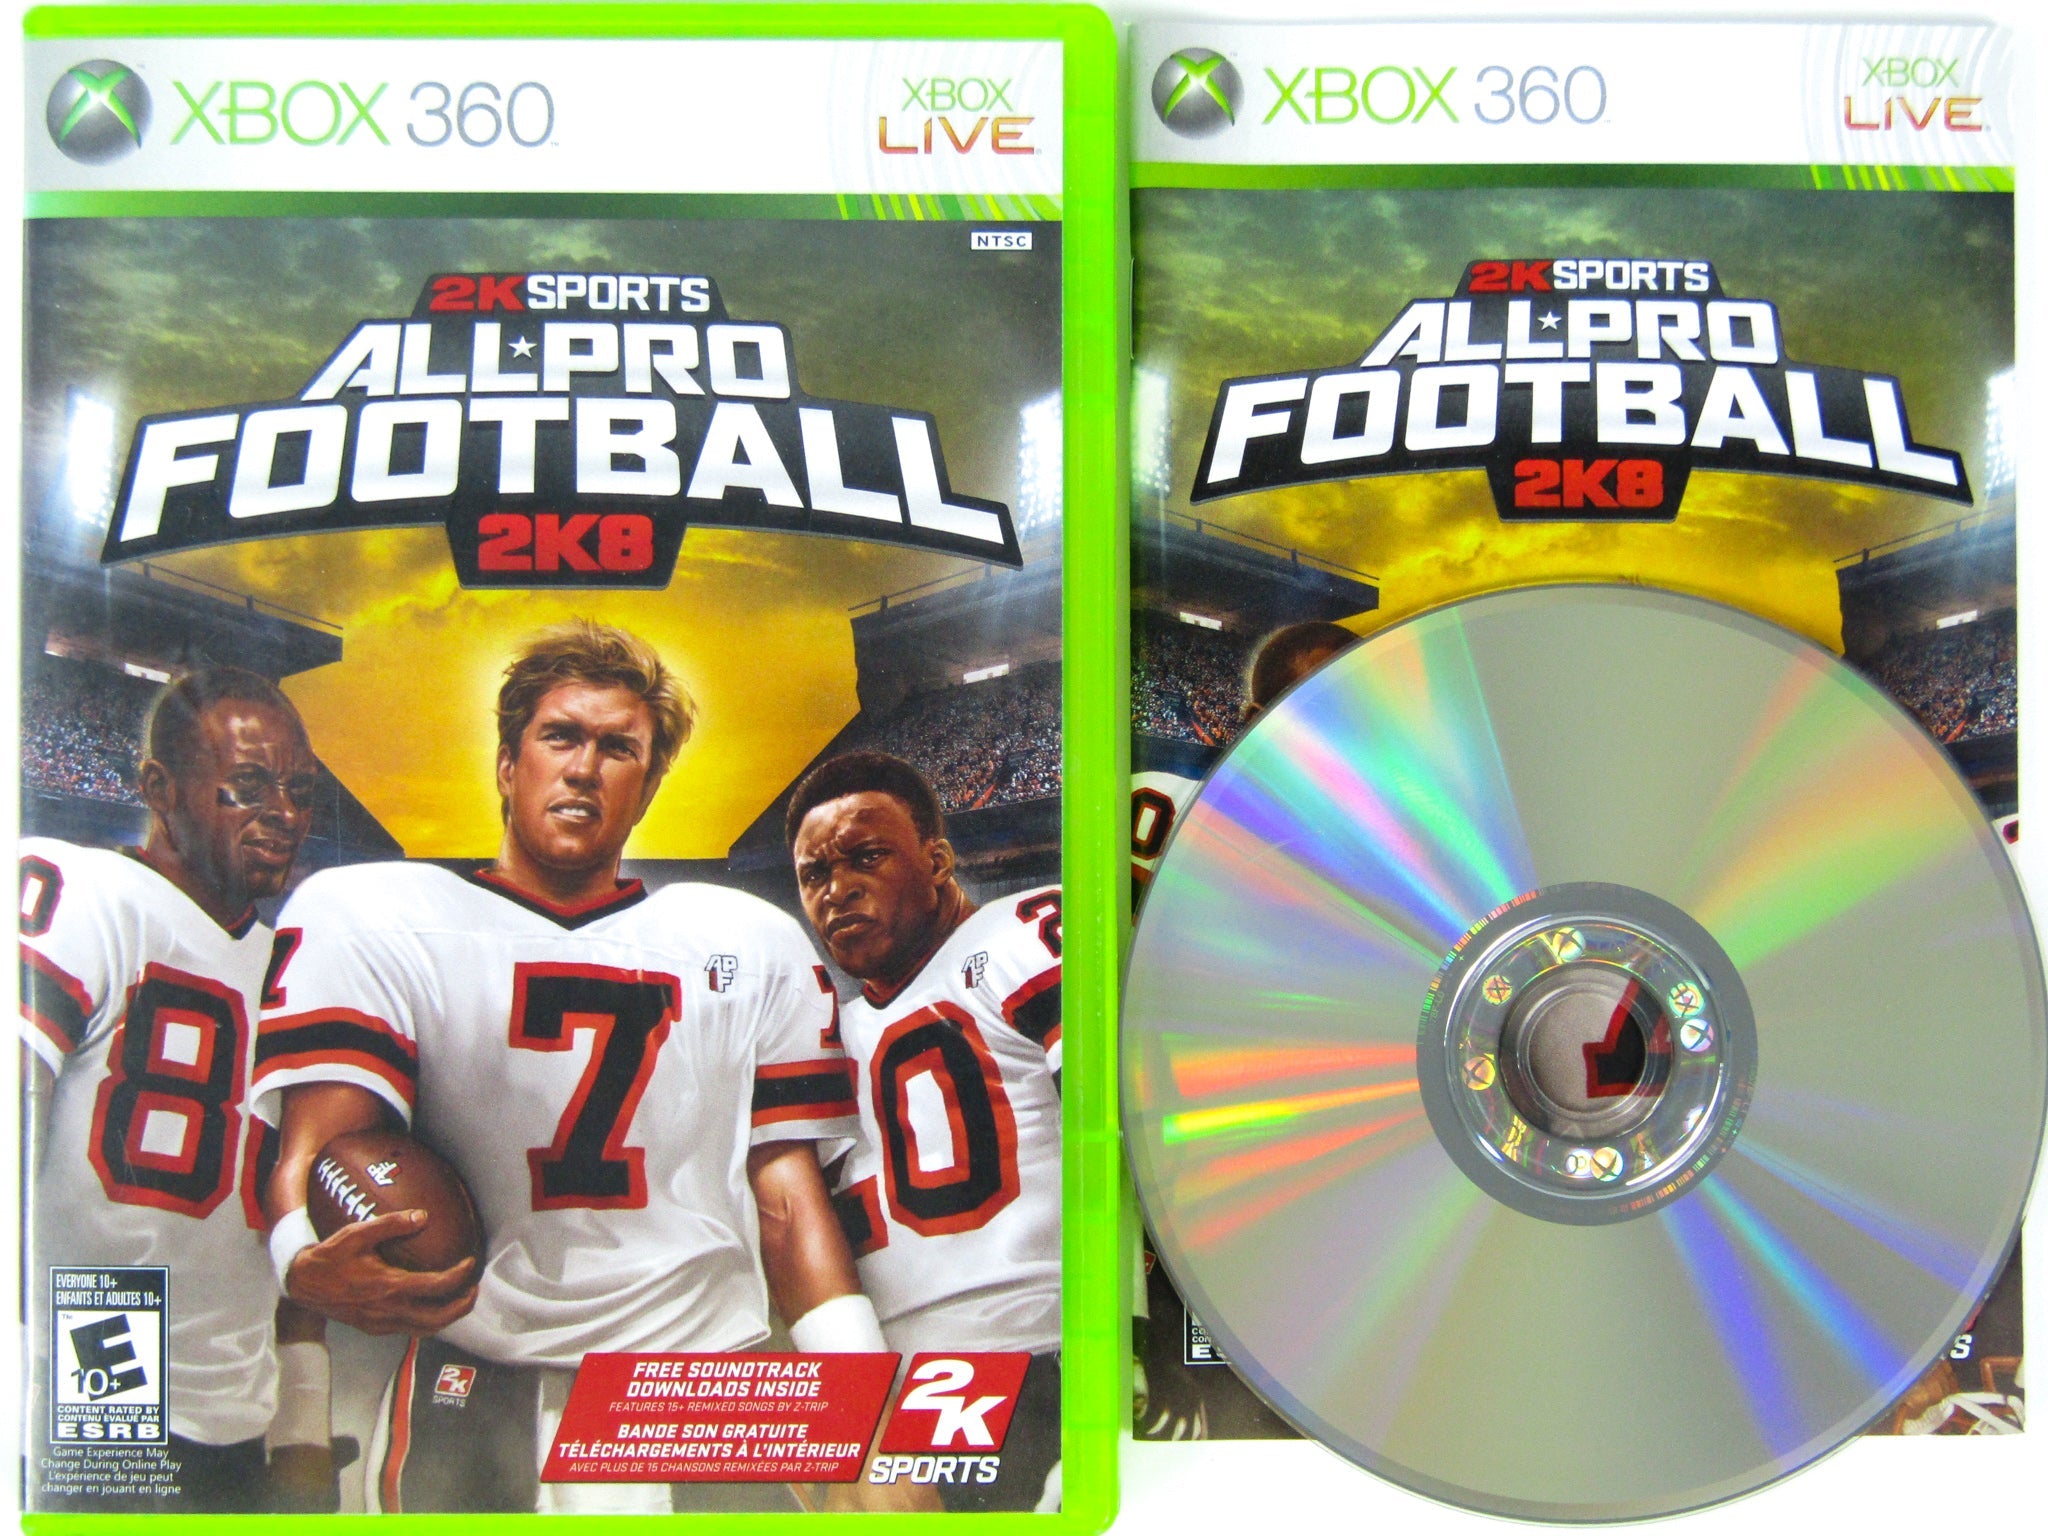 All Pro Football 2K8 - Xbox 360, Xbox 360